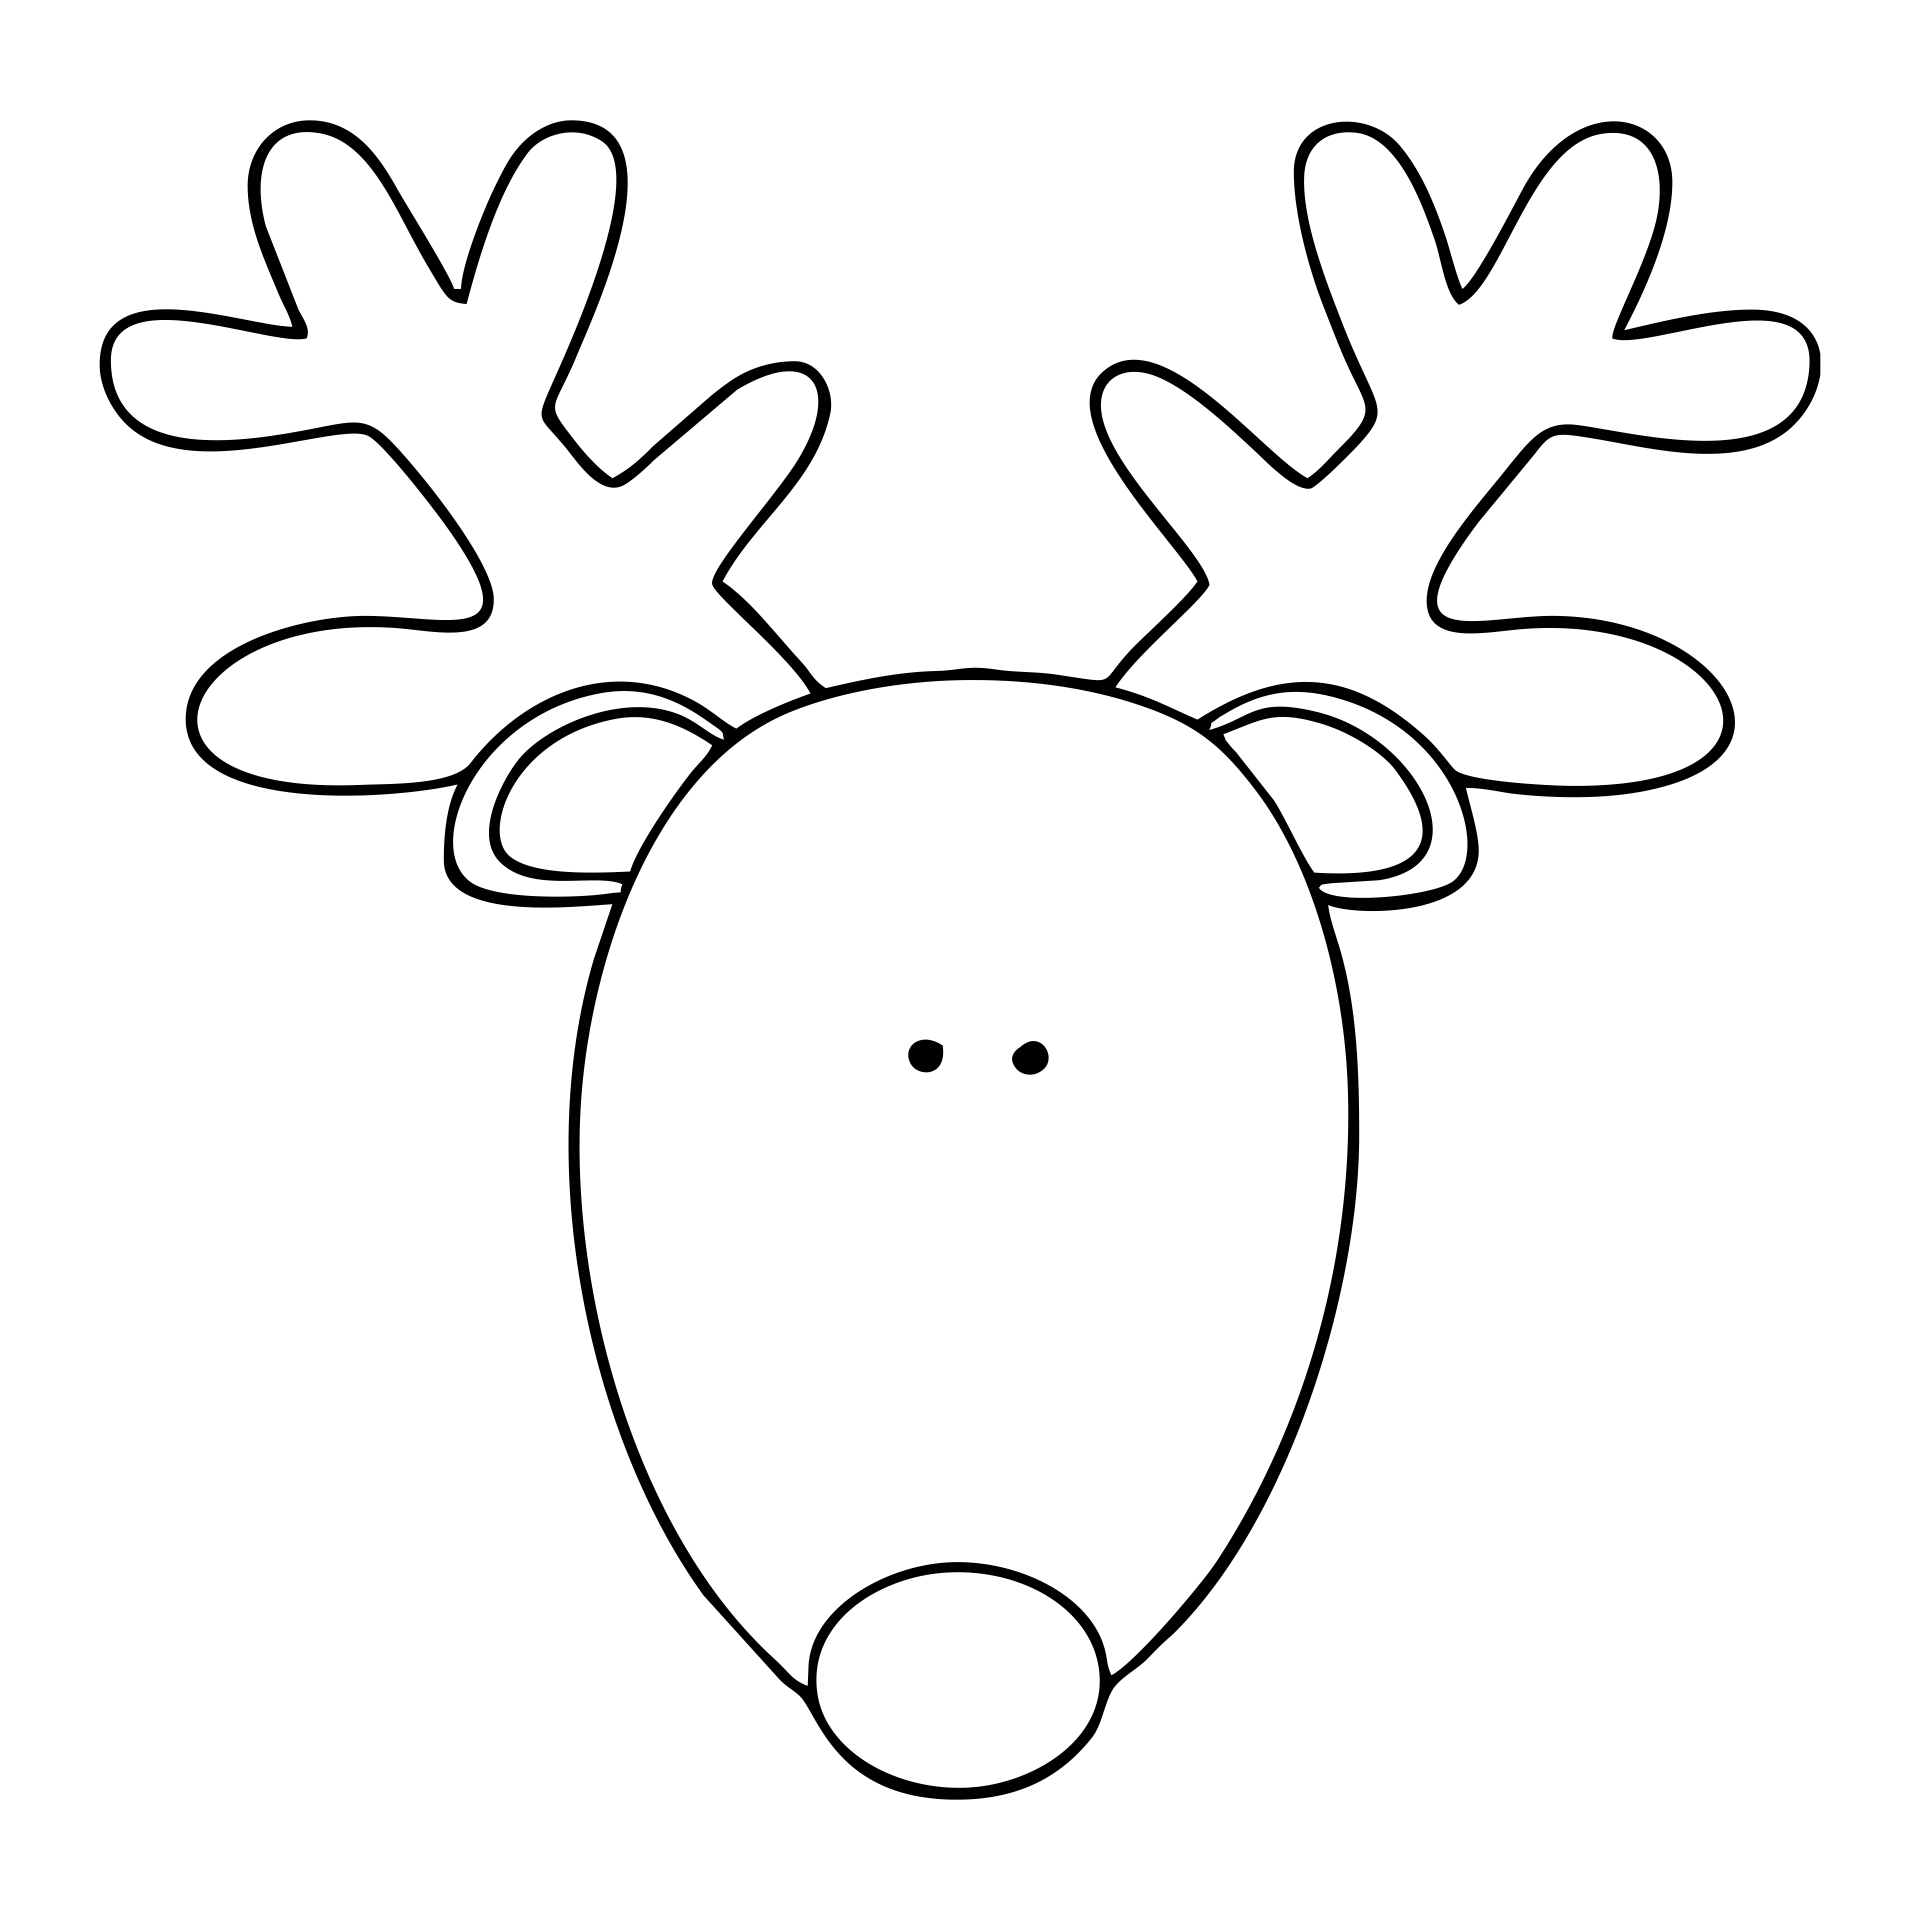 printable-reindeer-template